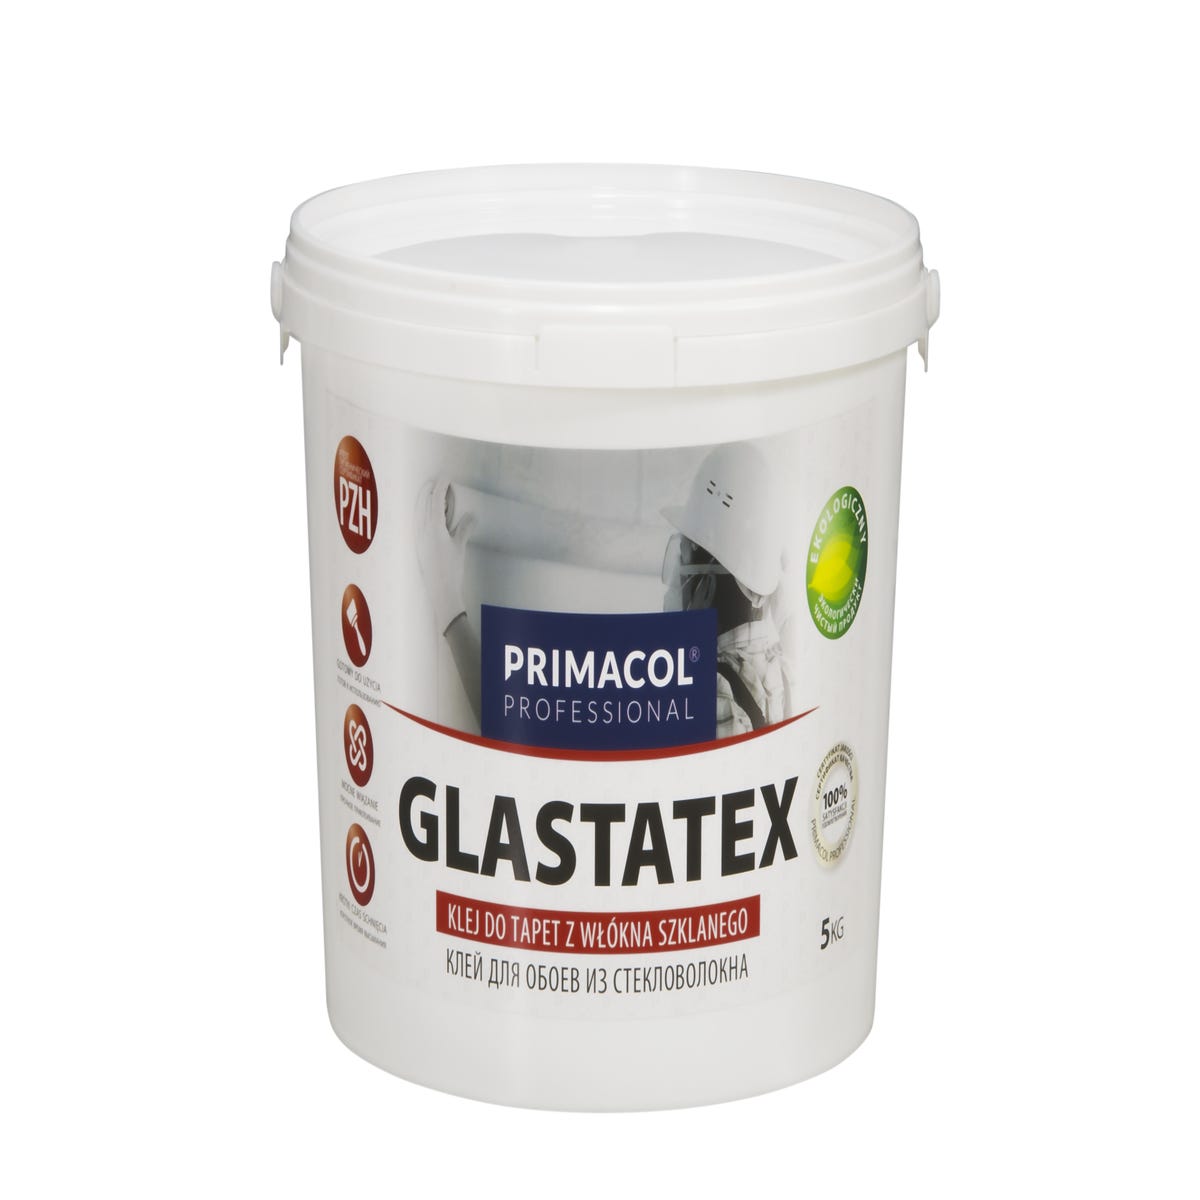 Zdjęcia - Płytka Klej do tapet z włókna szklanego Glastatex 5 kg Primacol